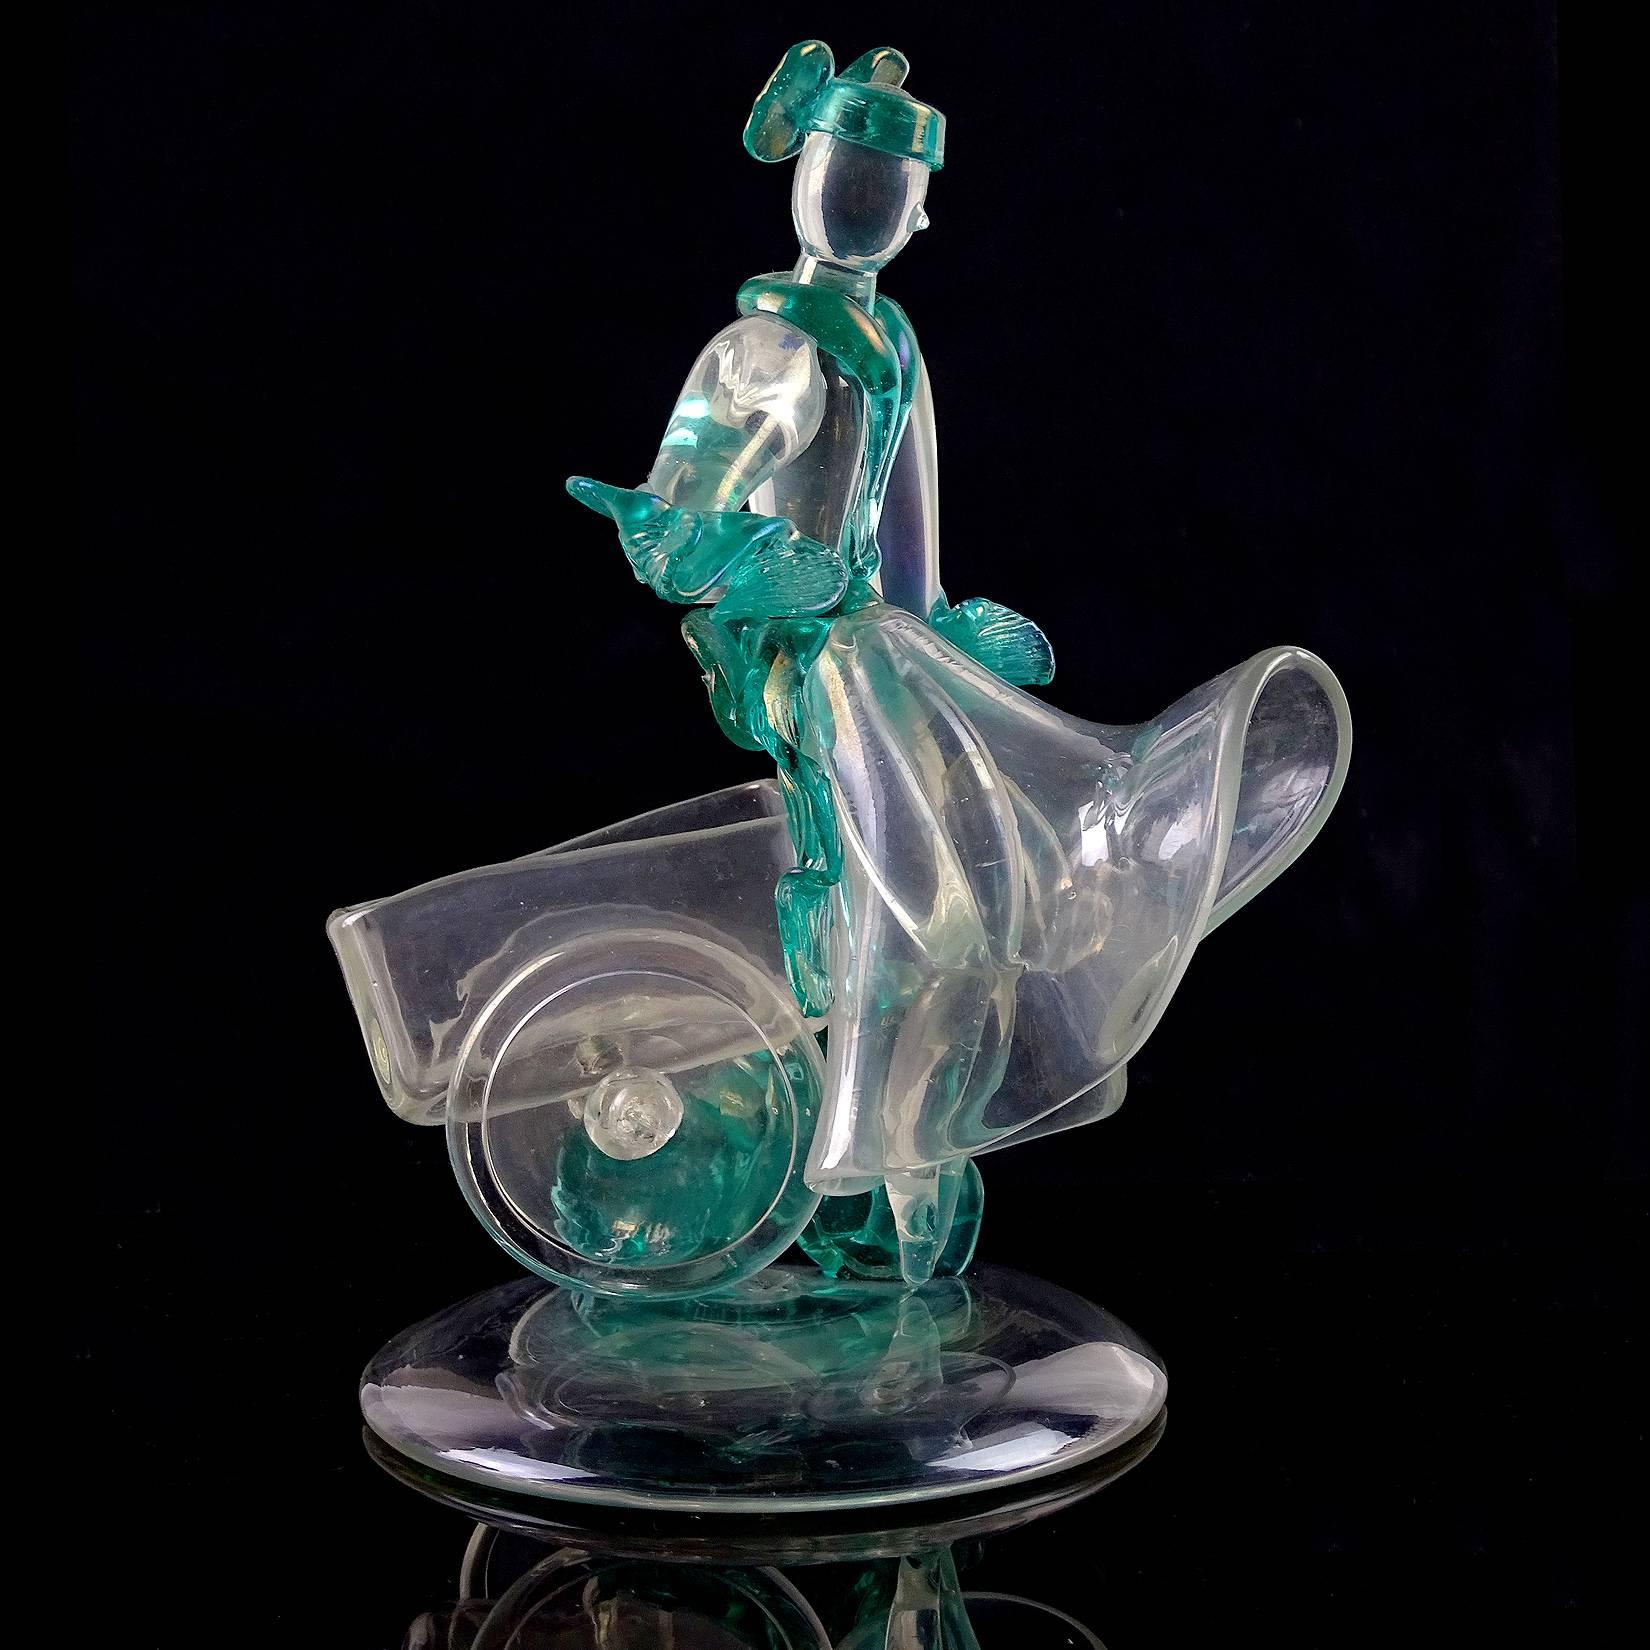 Seltene und schöne antike Murano mundgeblasen irisierenden italienischen Kunstglas Frau Figur / Skulptur, sitzt auf einem Wagen. Dokumentiert für den Designer Flavio Poli für Seguso Vetri d'Arte, ca. 1930er Jahre. Ihr Kostüm hat durchgehend grüne